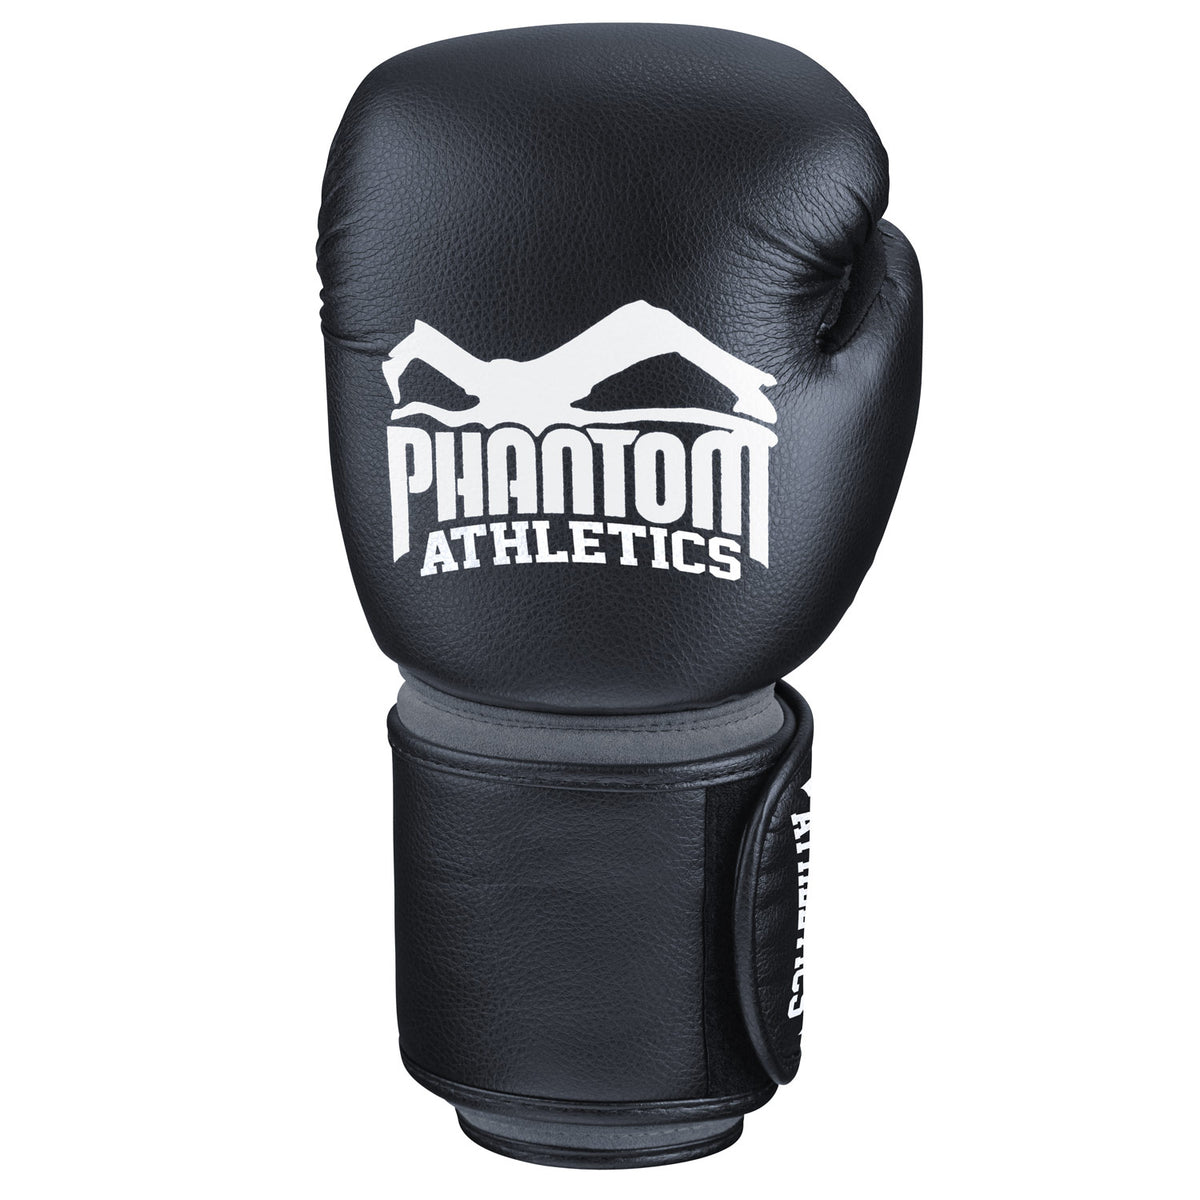 Der Phantom Elite Boxhandschuh verfügt über einen extra langen Klettverschluss und sorgt so für eine unerreichte Handgelenksunterstützung.